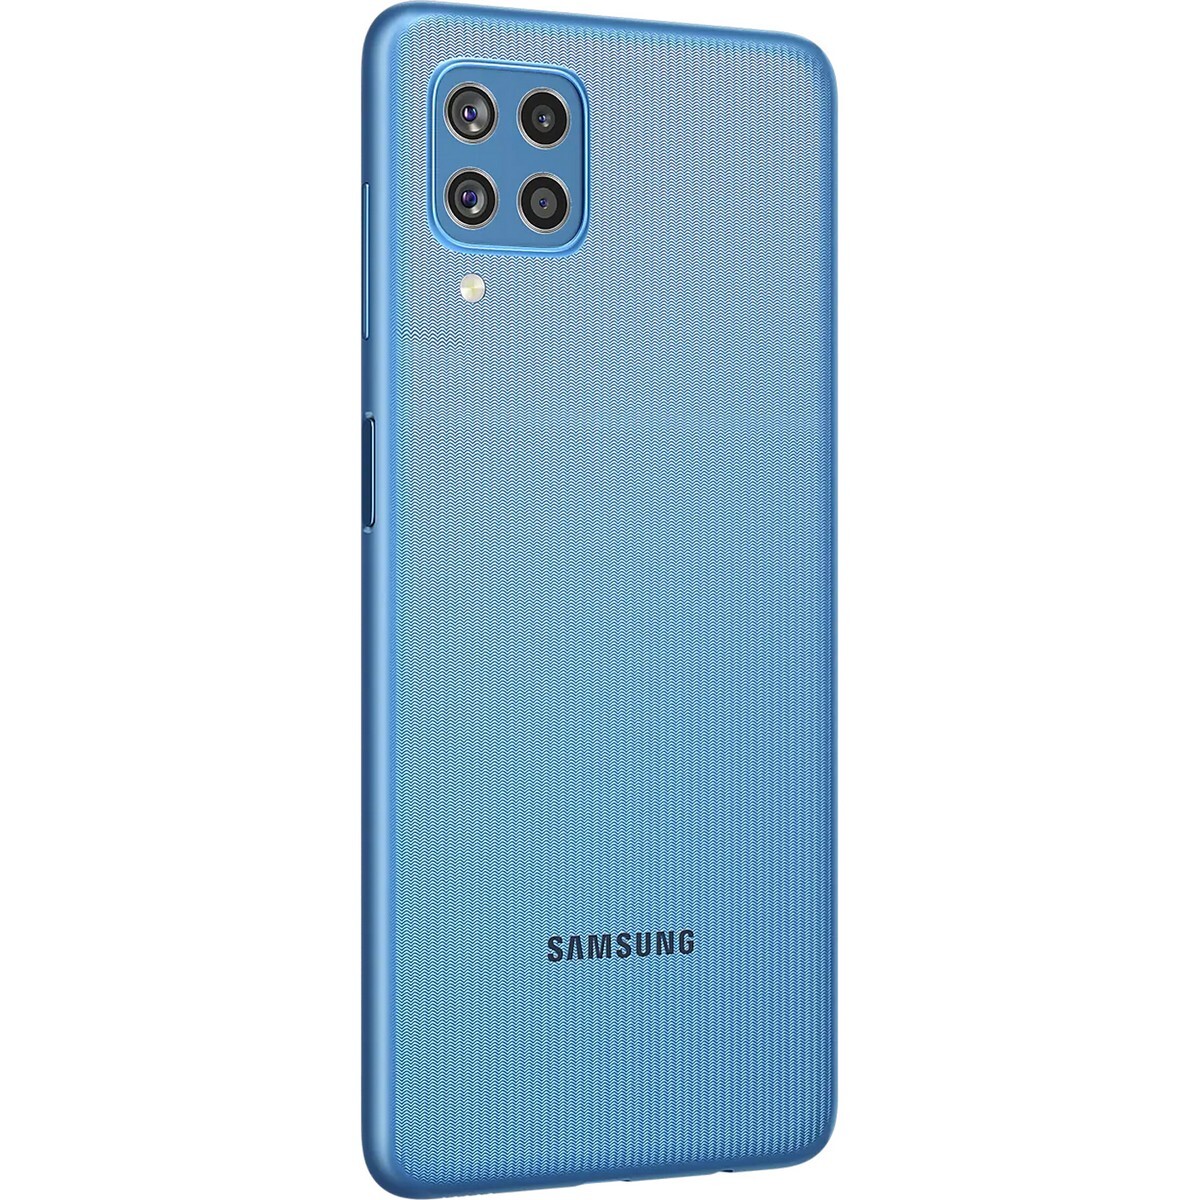 Samsung Galaxy F22 6GB/128GB Denim Blue